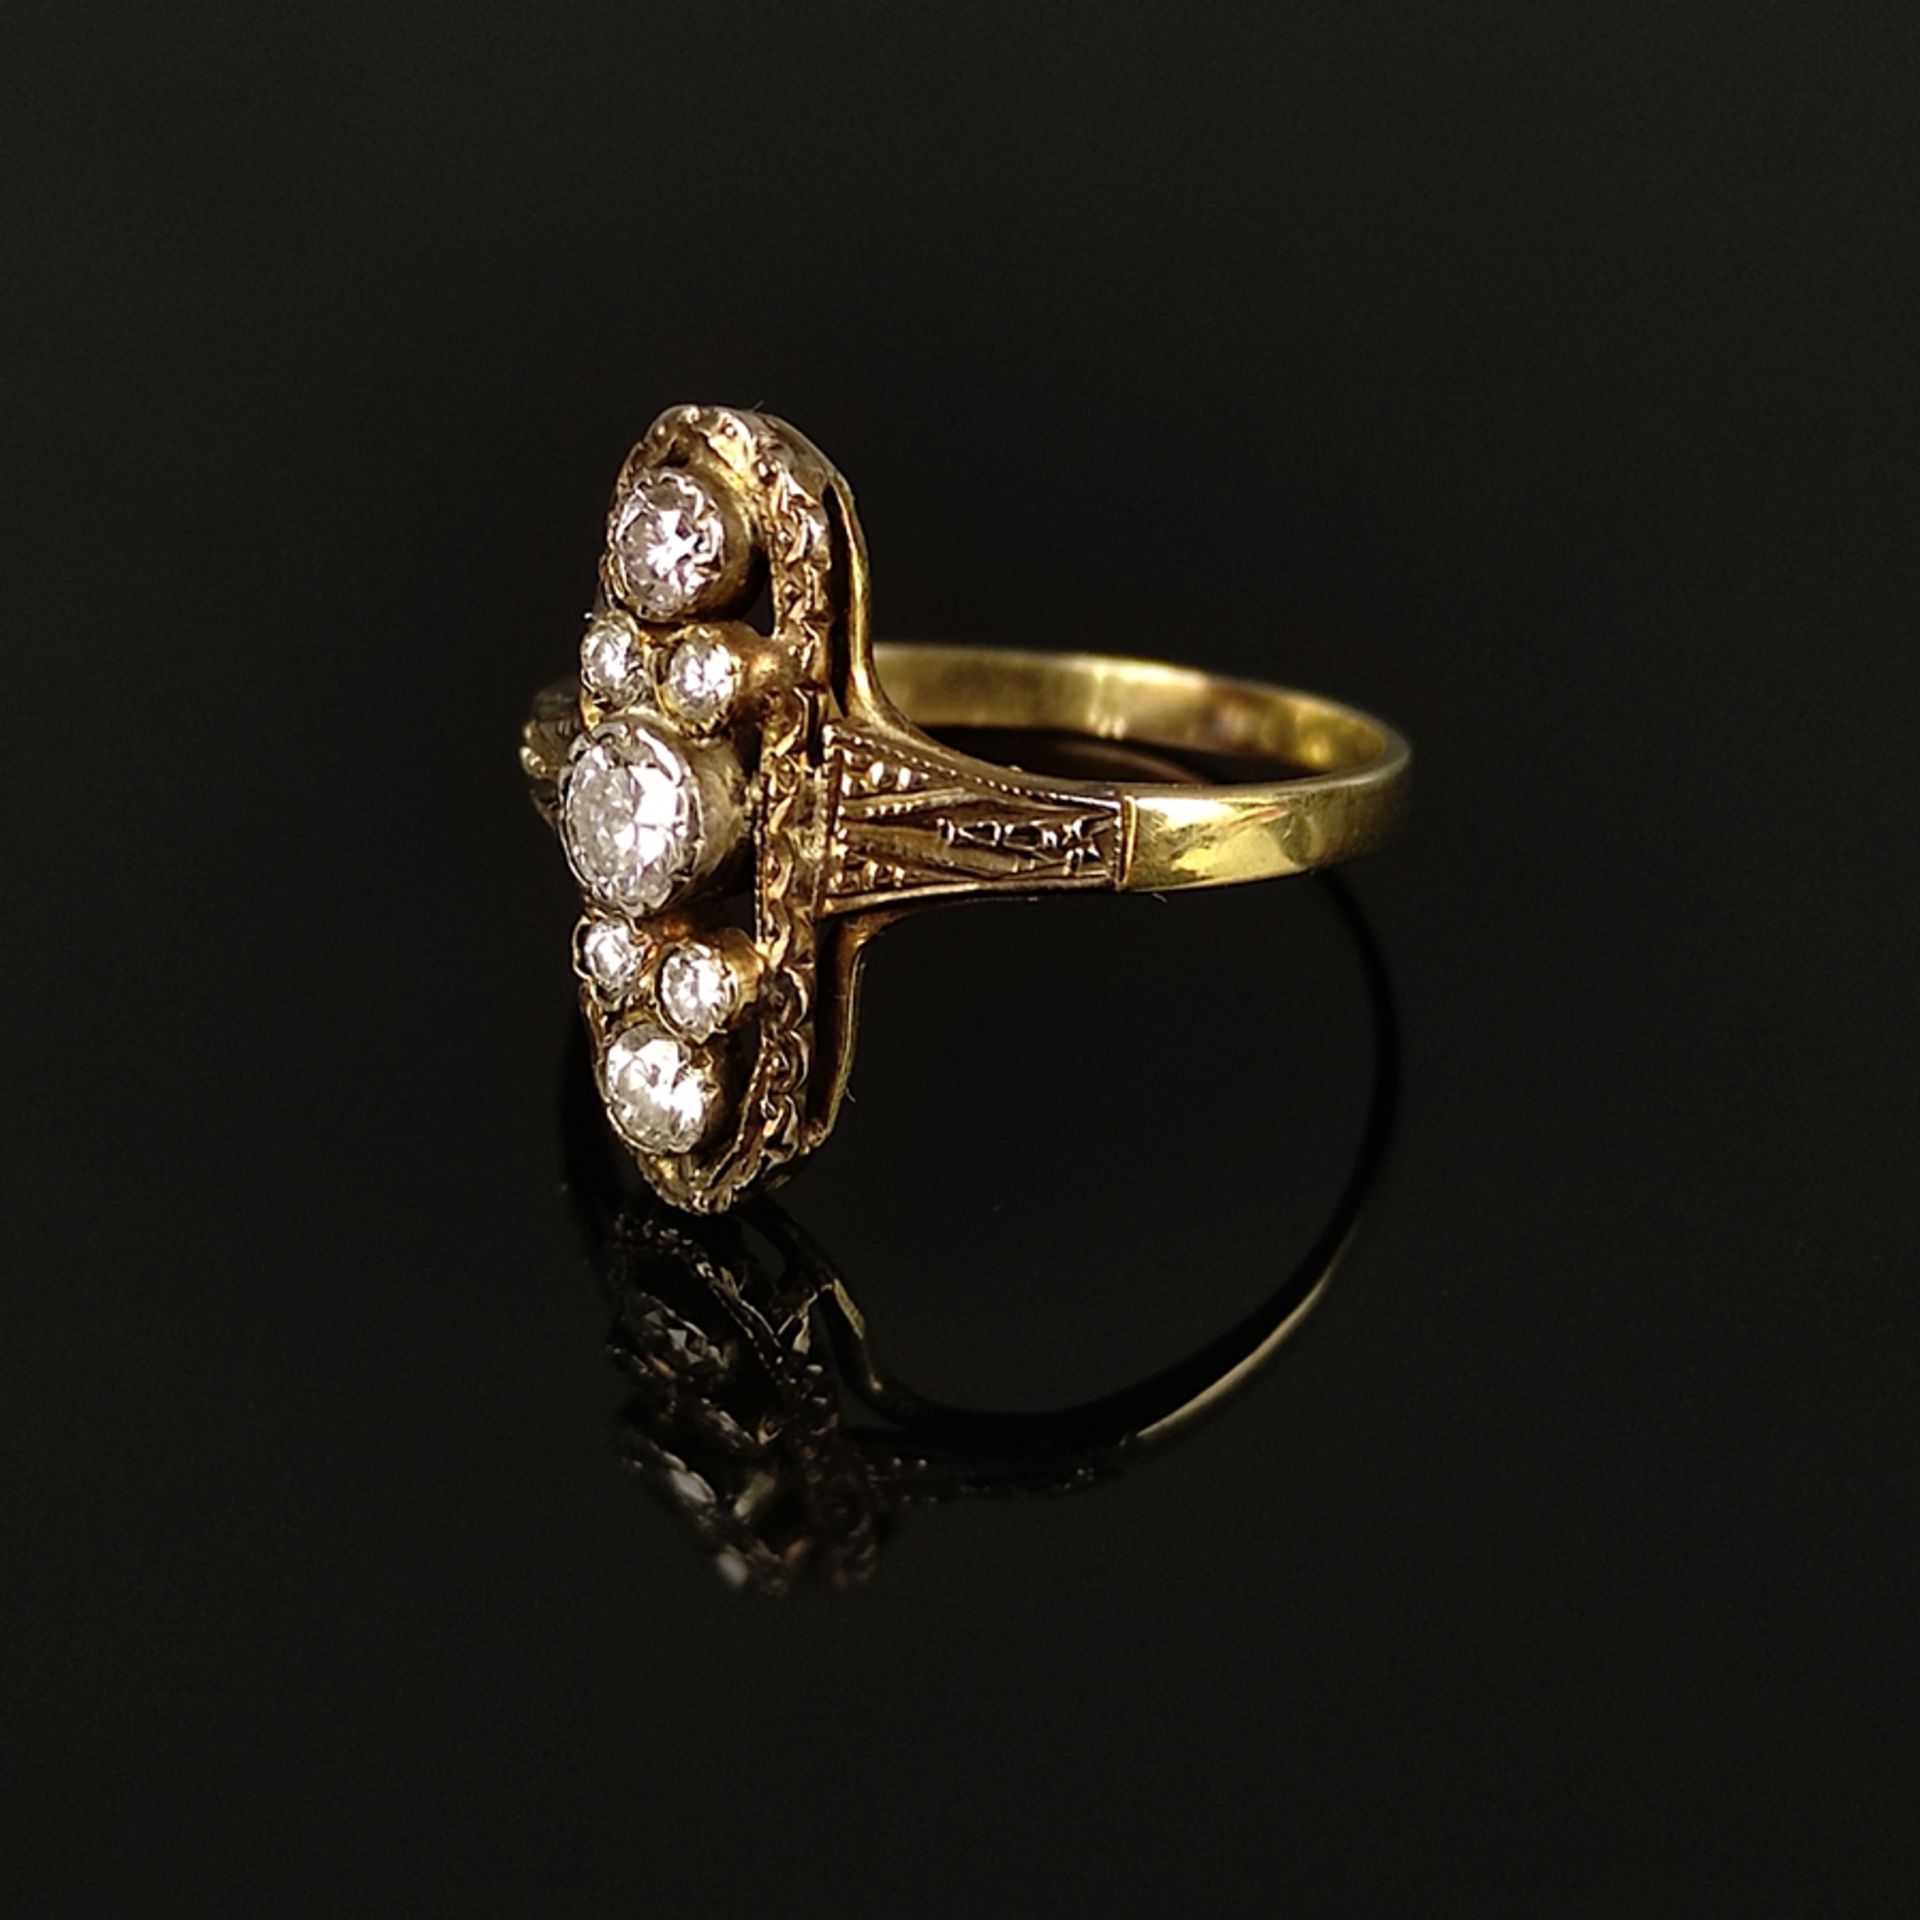 Eleganter Art Déco Brillant Ring, 585/14K Gelbgold (getestet), Gesamtgewicht 1,84g, besetzt mit 7 B